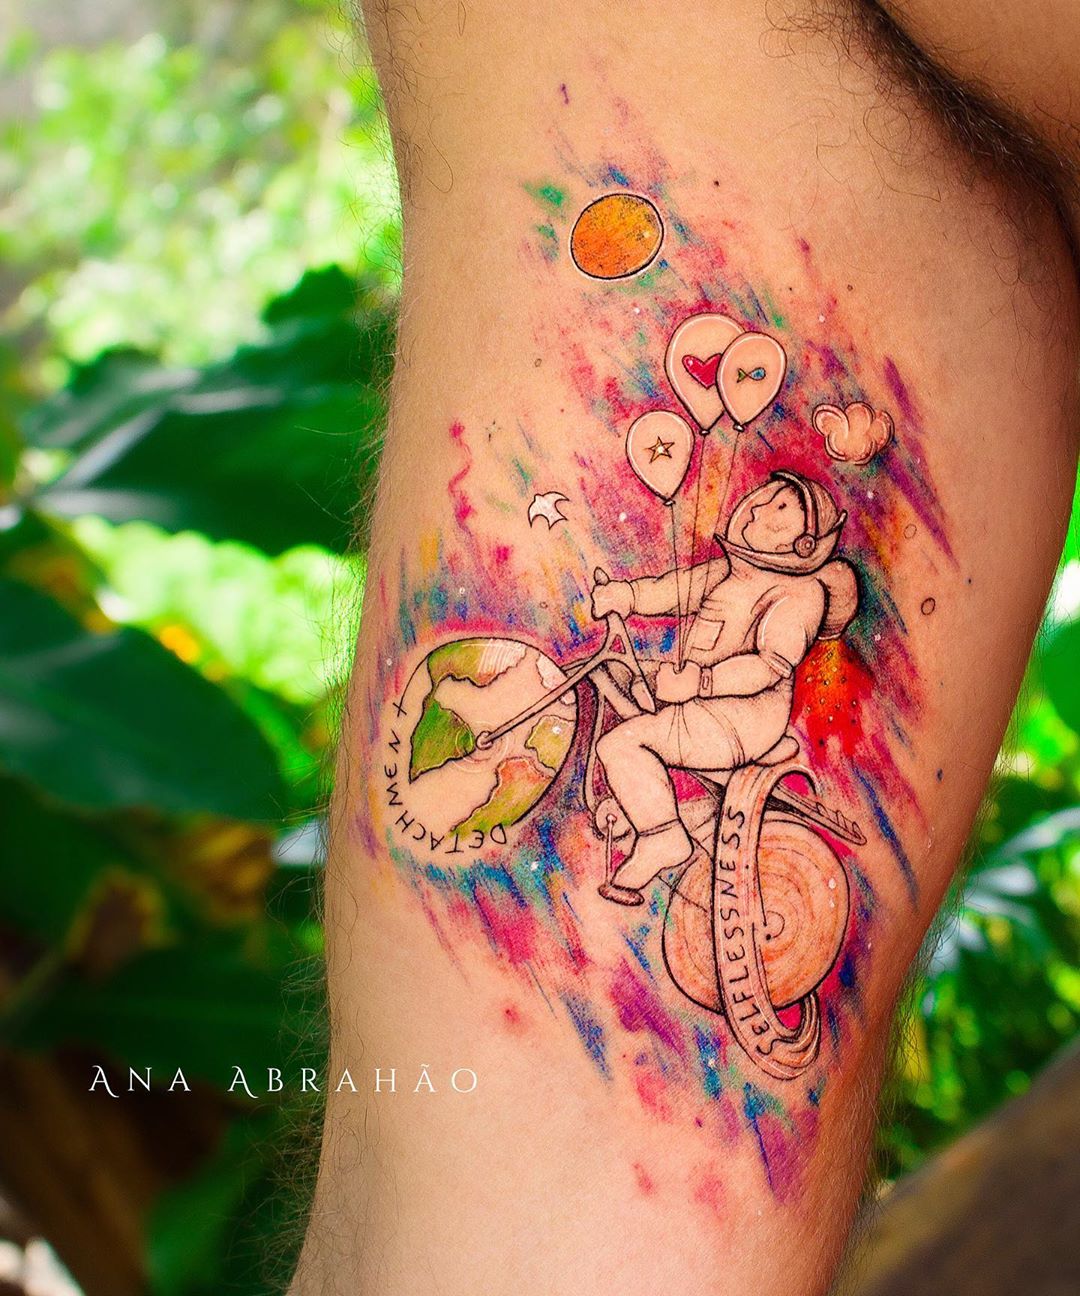 Ana Abrahão tatto photos pics images